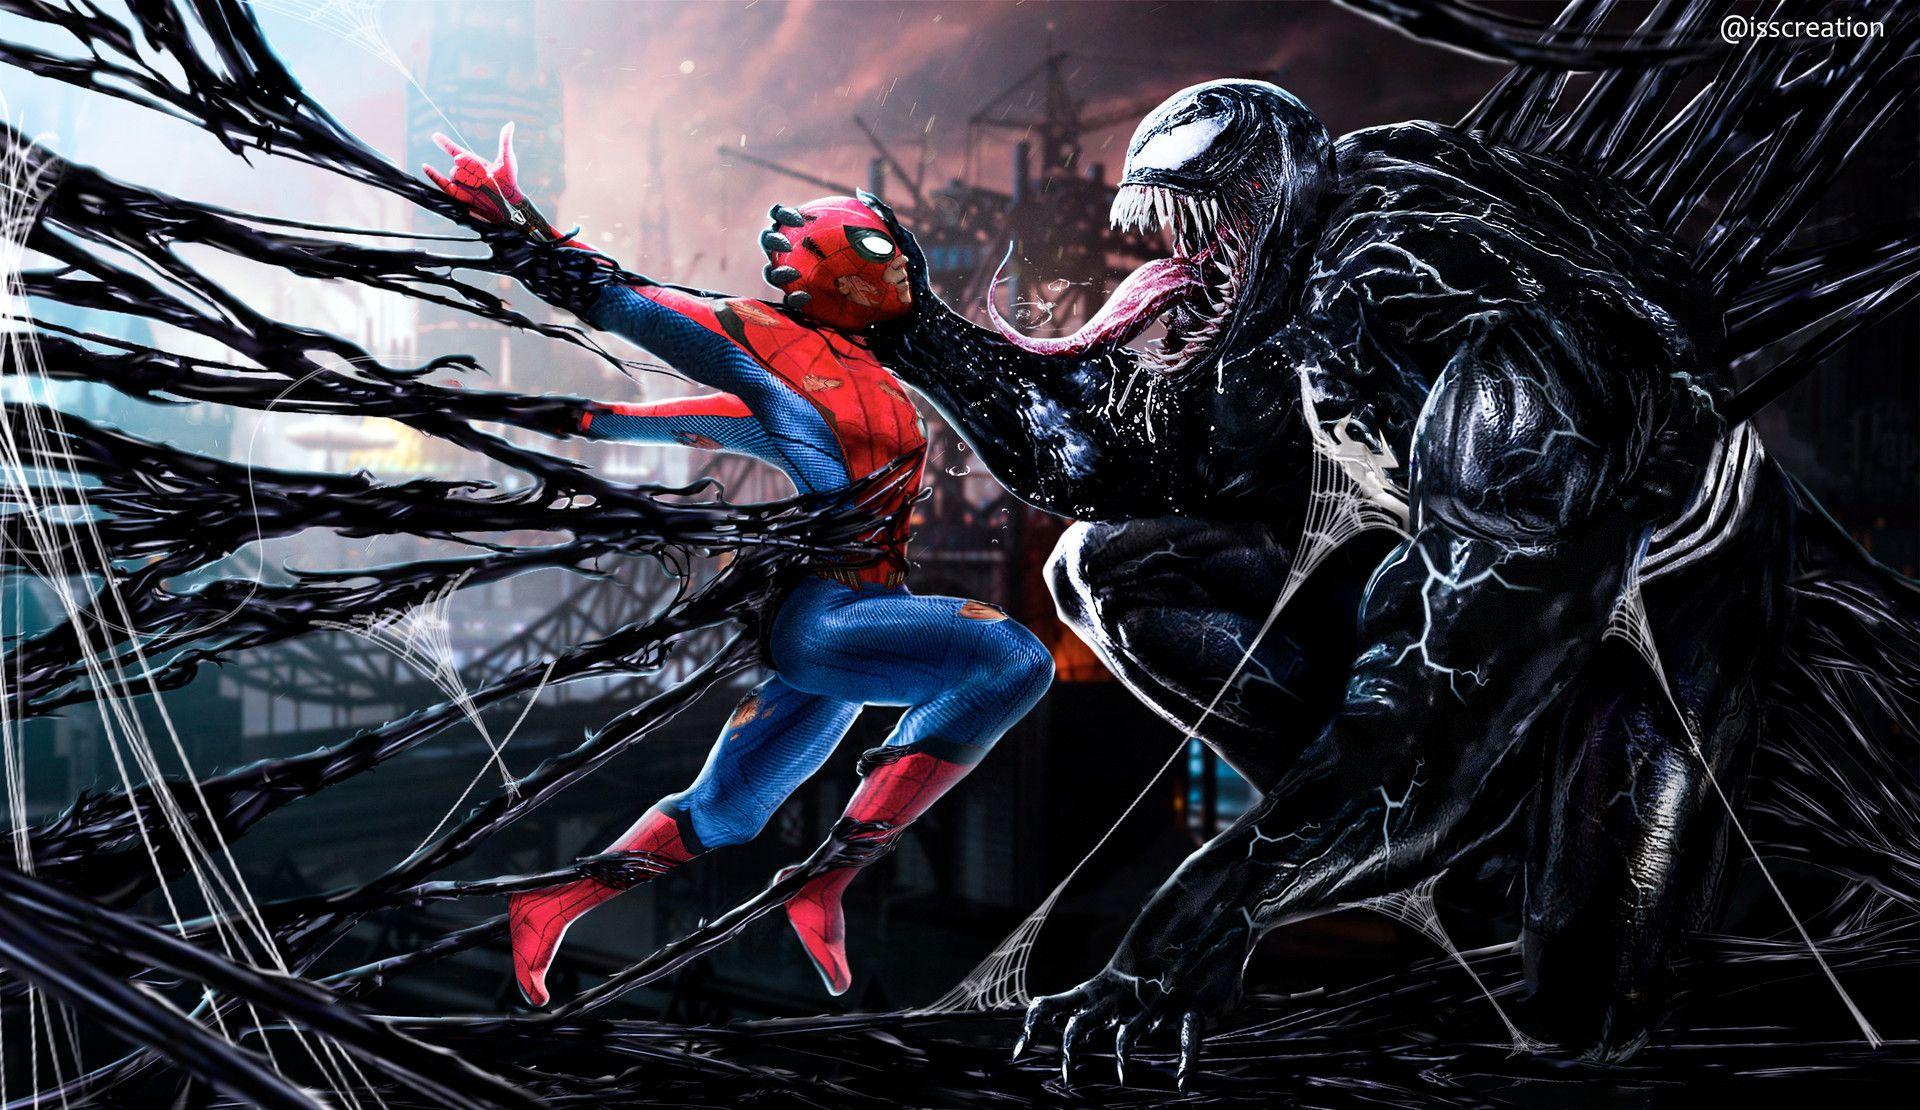 SpiderMan vs Venom 4K Wallpaper for iPhone